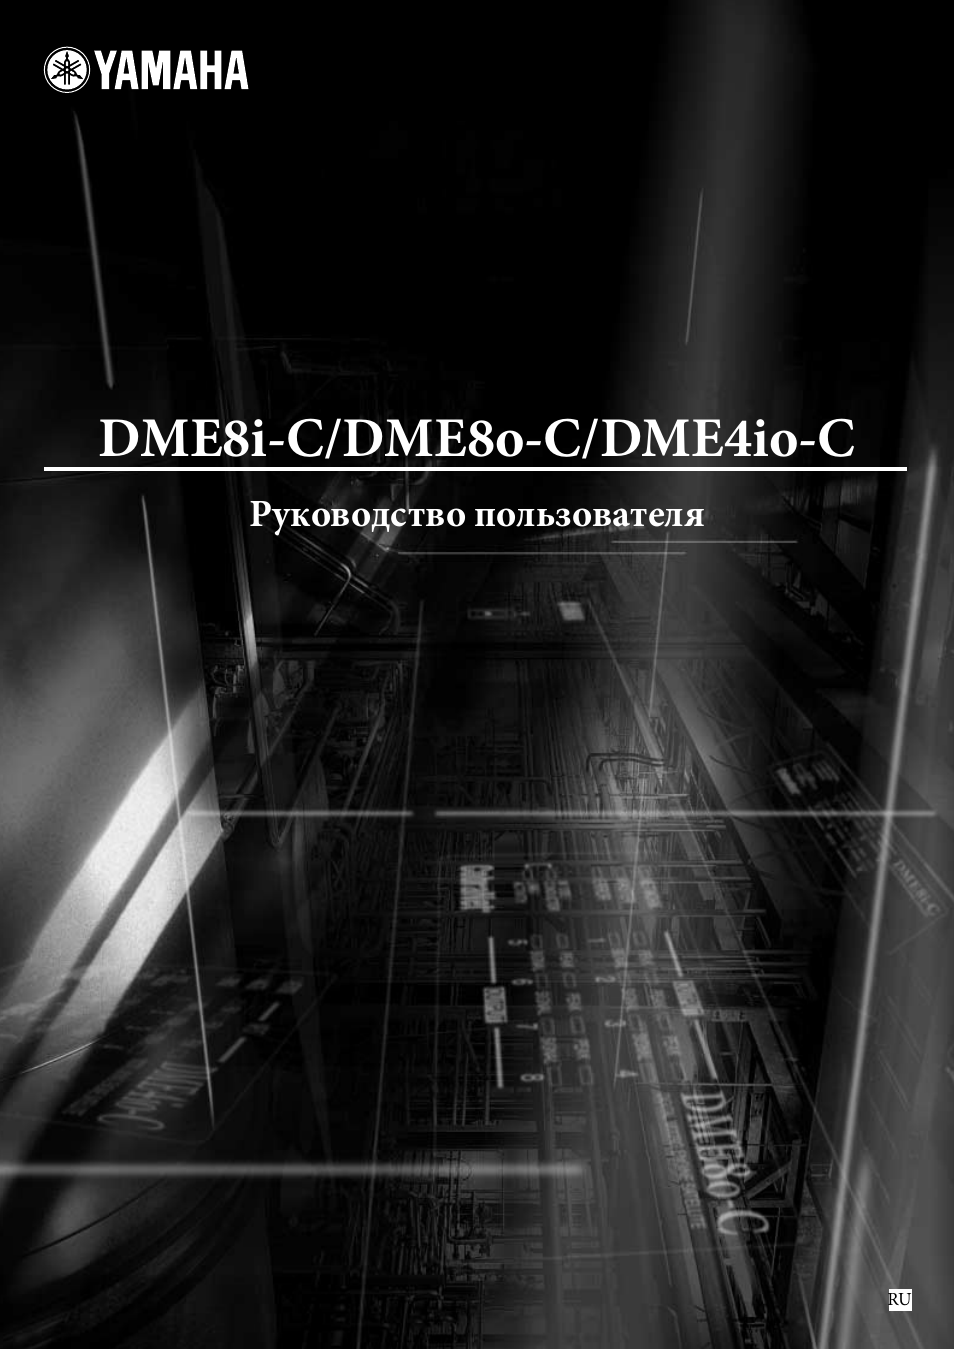 Инструкция по эксплуатации Yamaha dme8i-c | 47 страниц